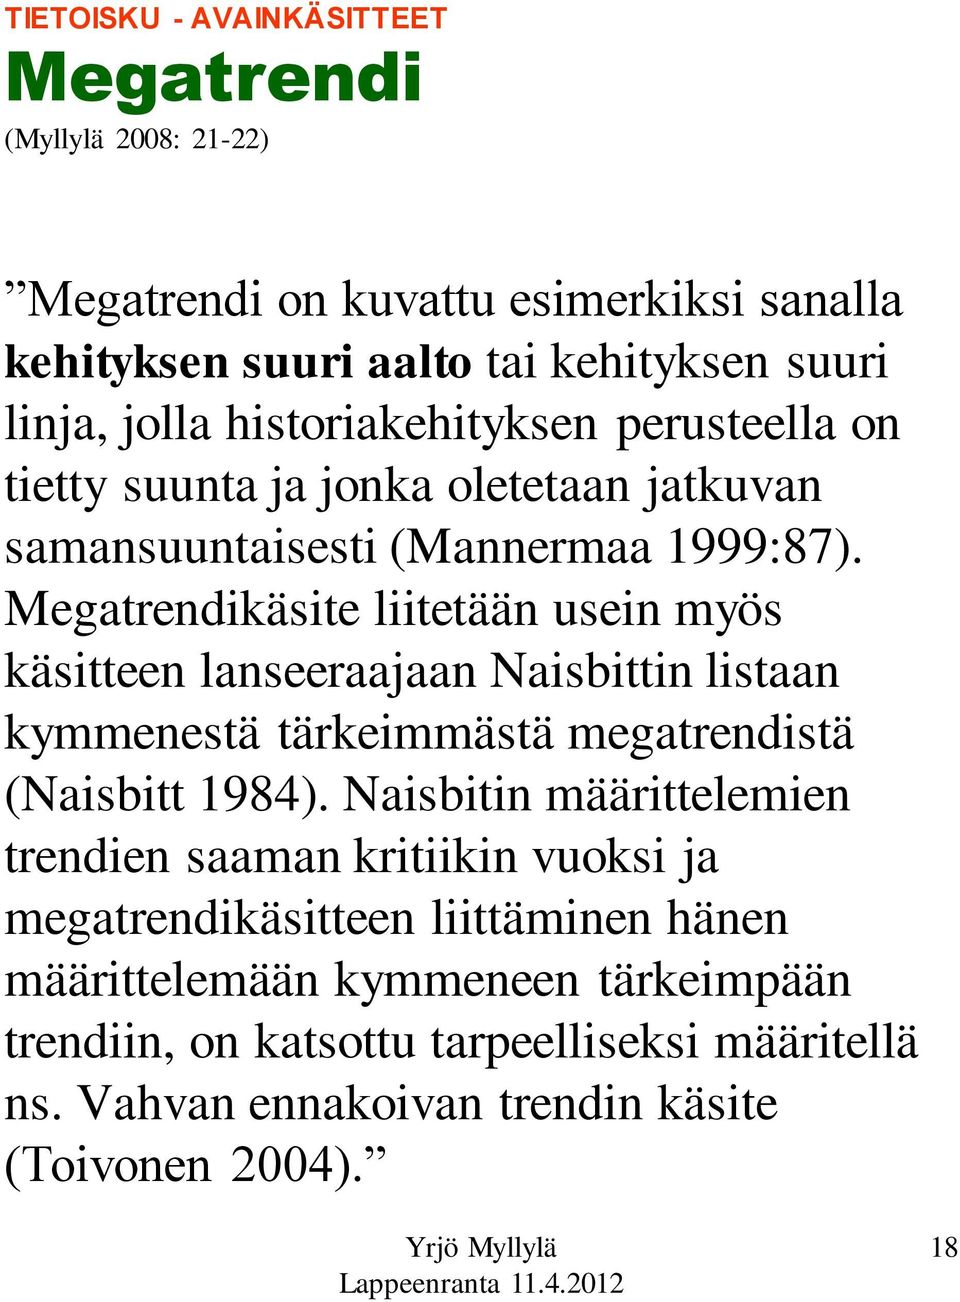 Megatrendikäsite liitetään usein myös käsitteen lanseeraajaan Naisbittin listaan kymmenestä tärkeimmästä megatrendistä (Naisbitt 1984).